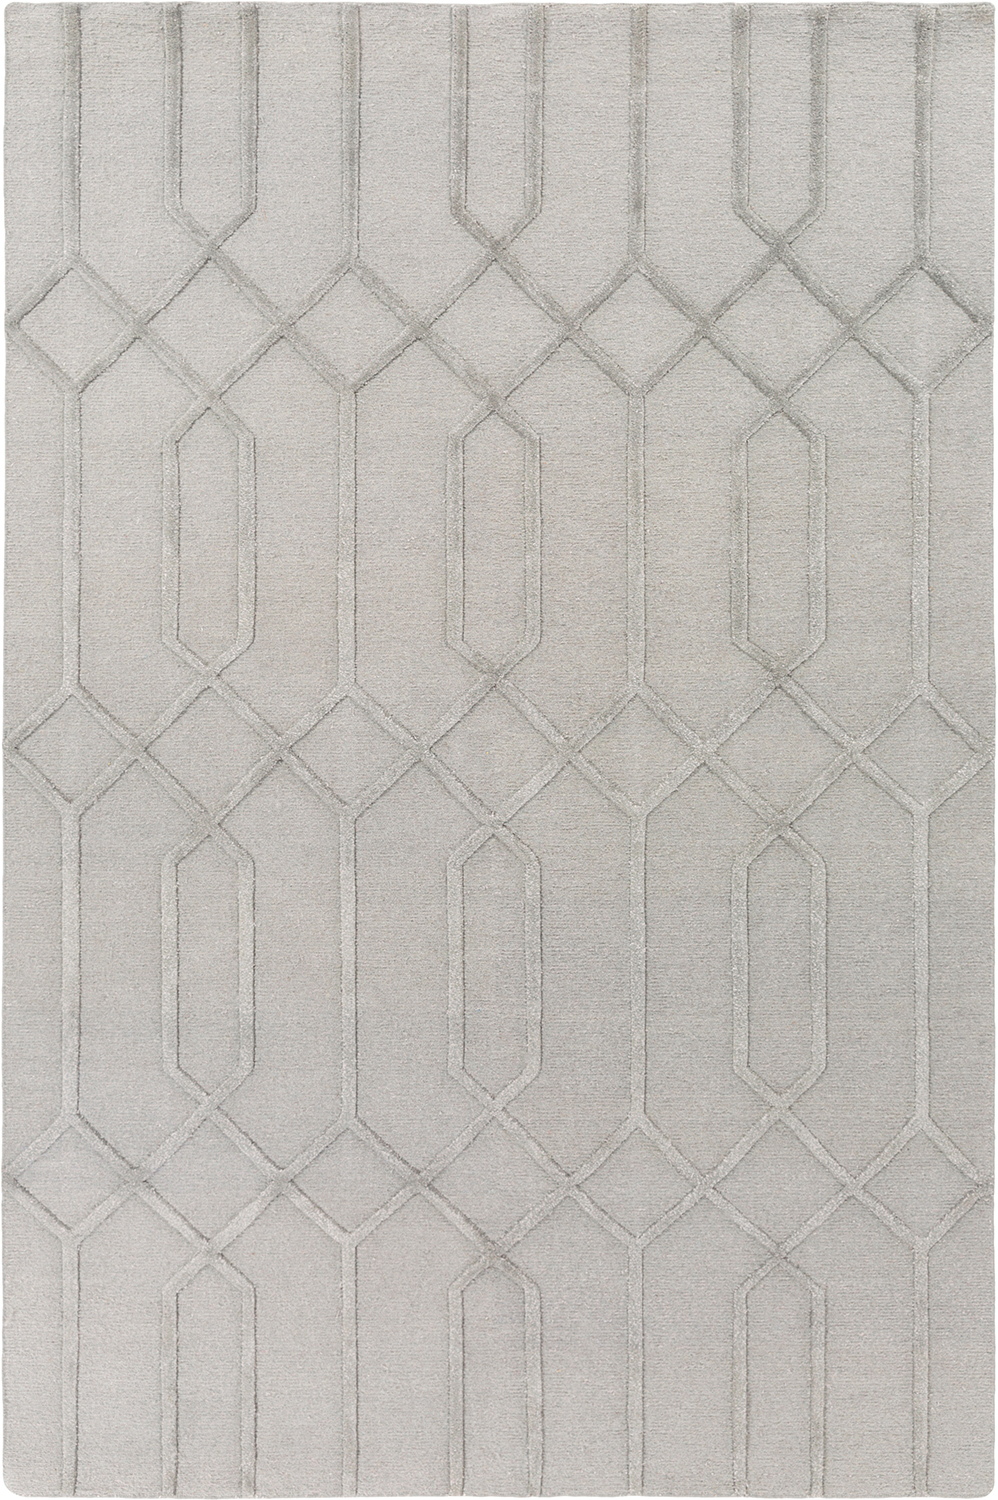 新中式风格浅灰色简单纹理图案地毯贴图